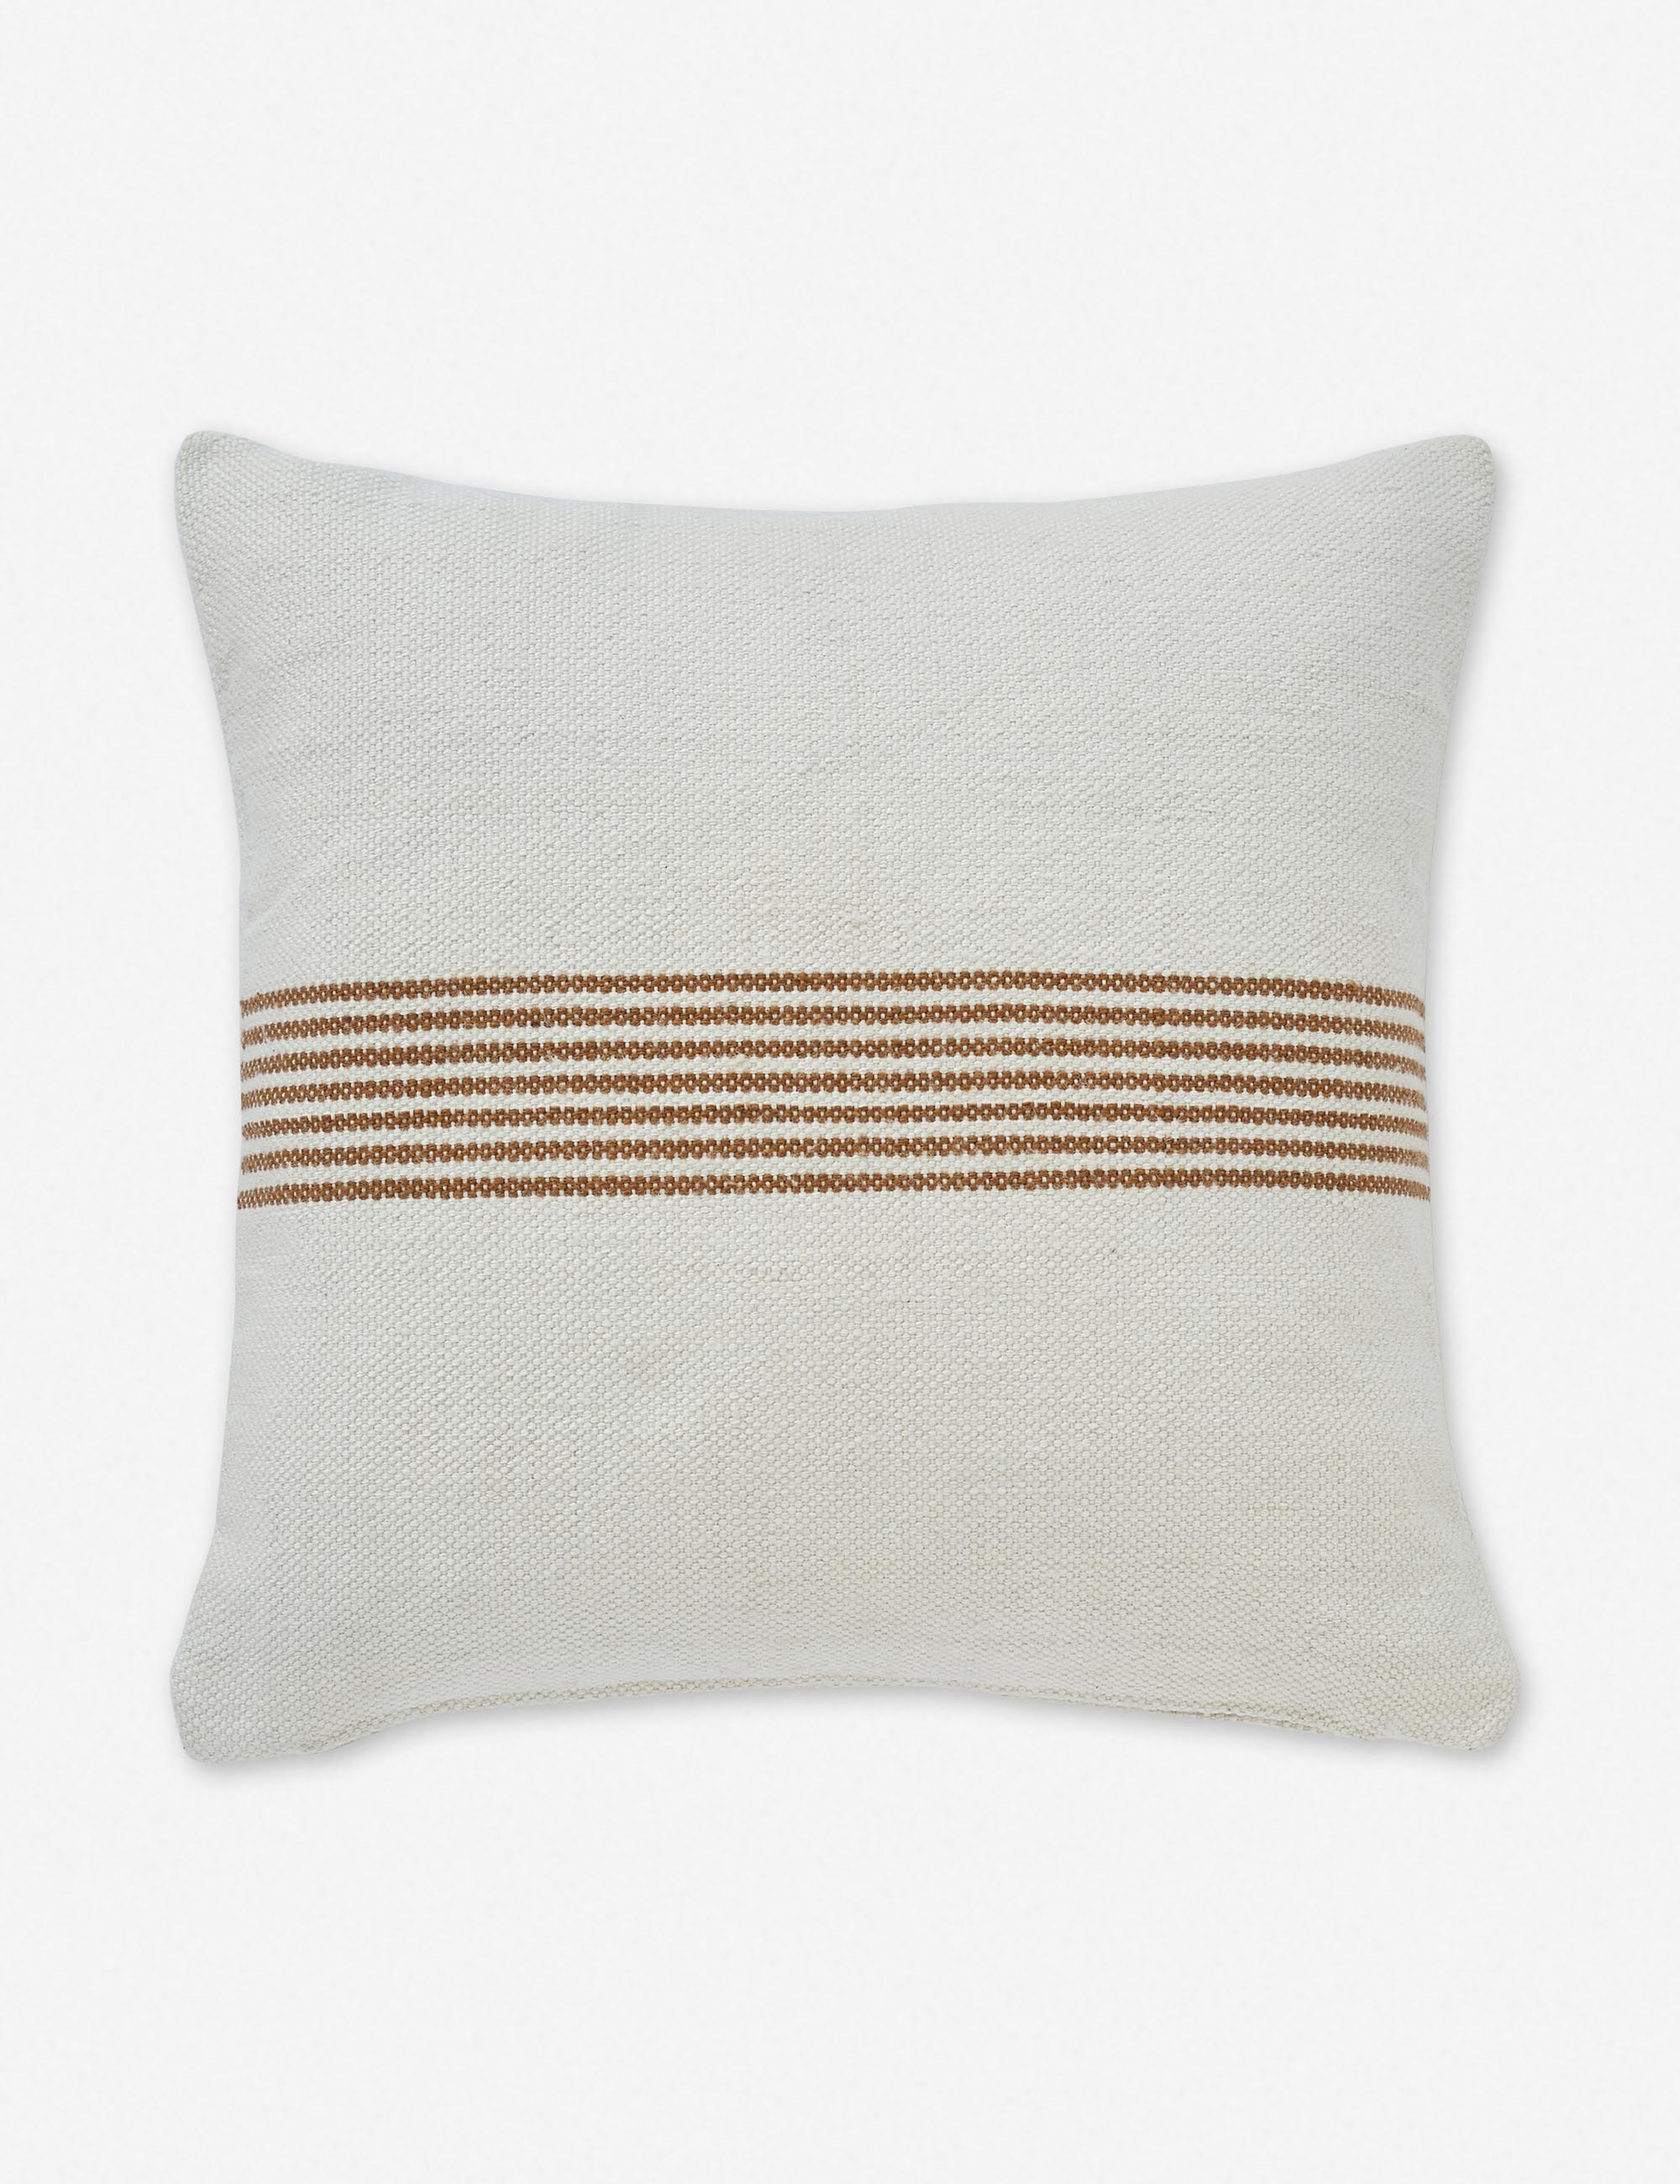 Katya Indoor/Outdoor Pillow, Rust Stripe, 20" x 20" - Lulu and Georgia